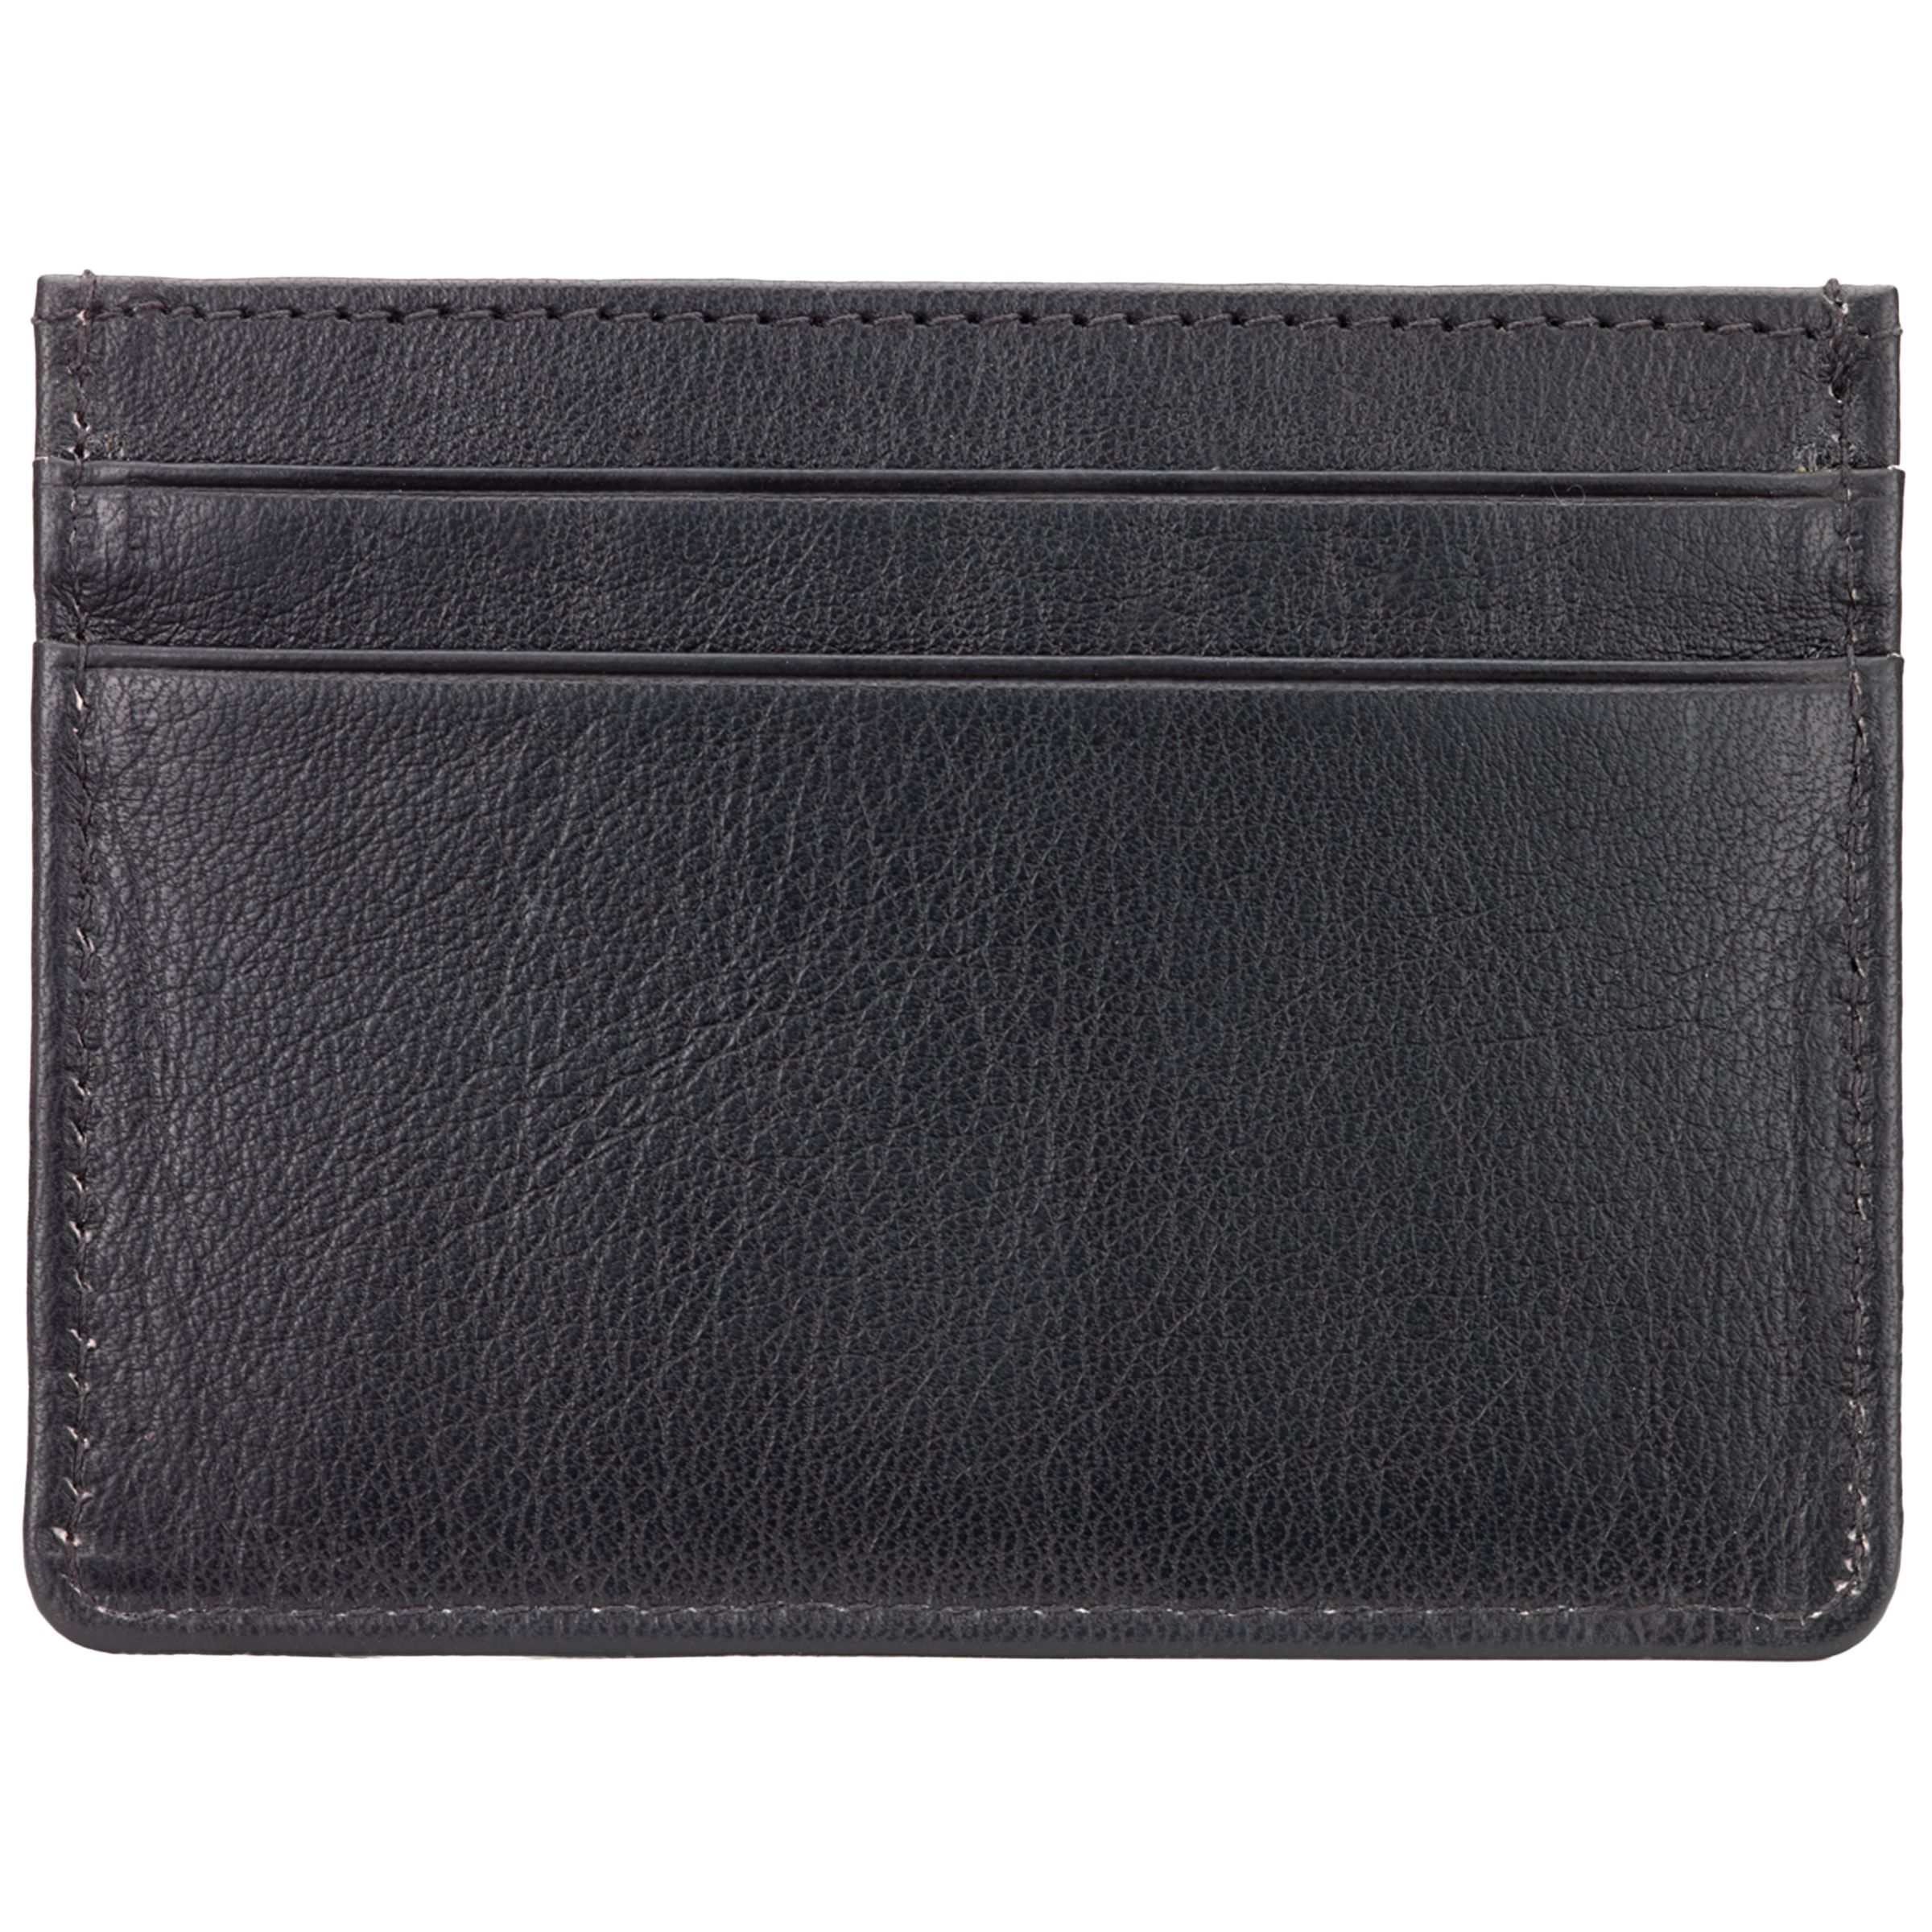 Men's Wallets | Leather Wallets & Card Holders | John Lewis